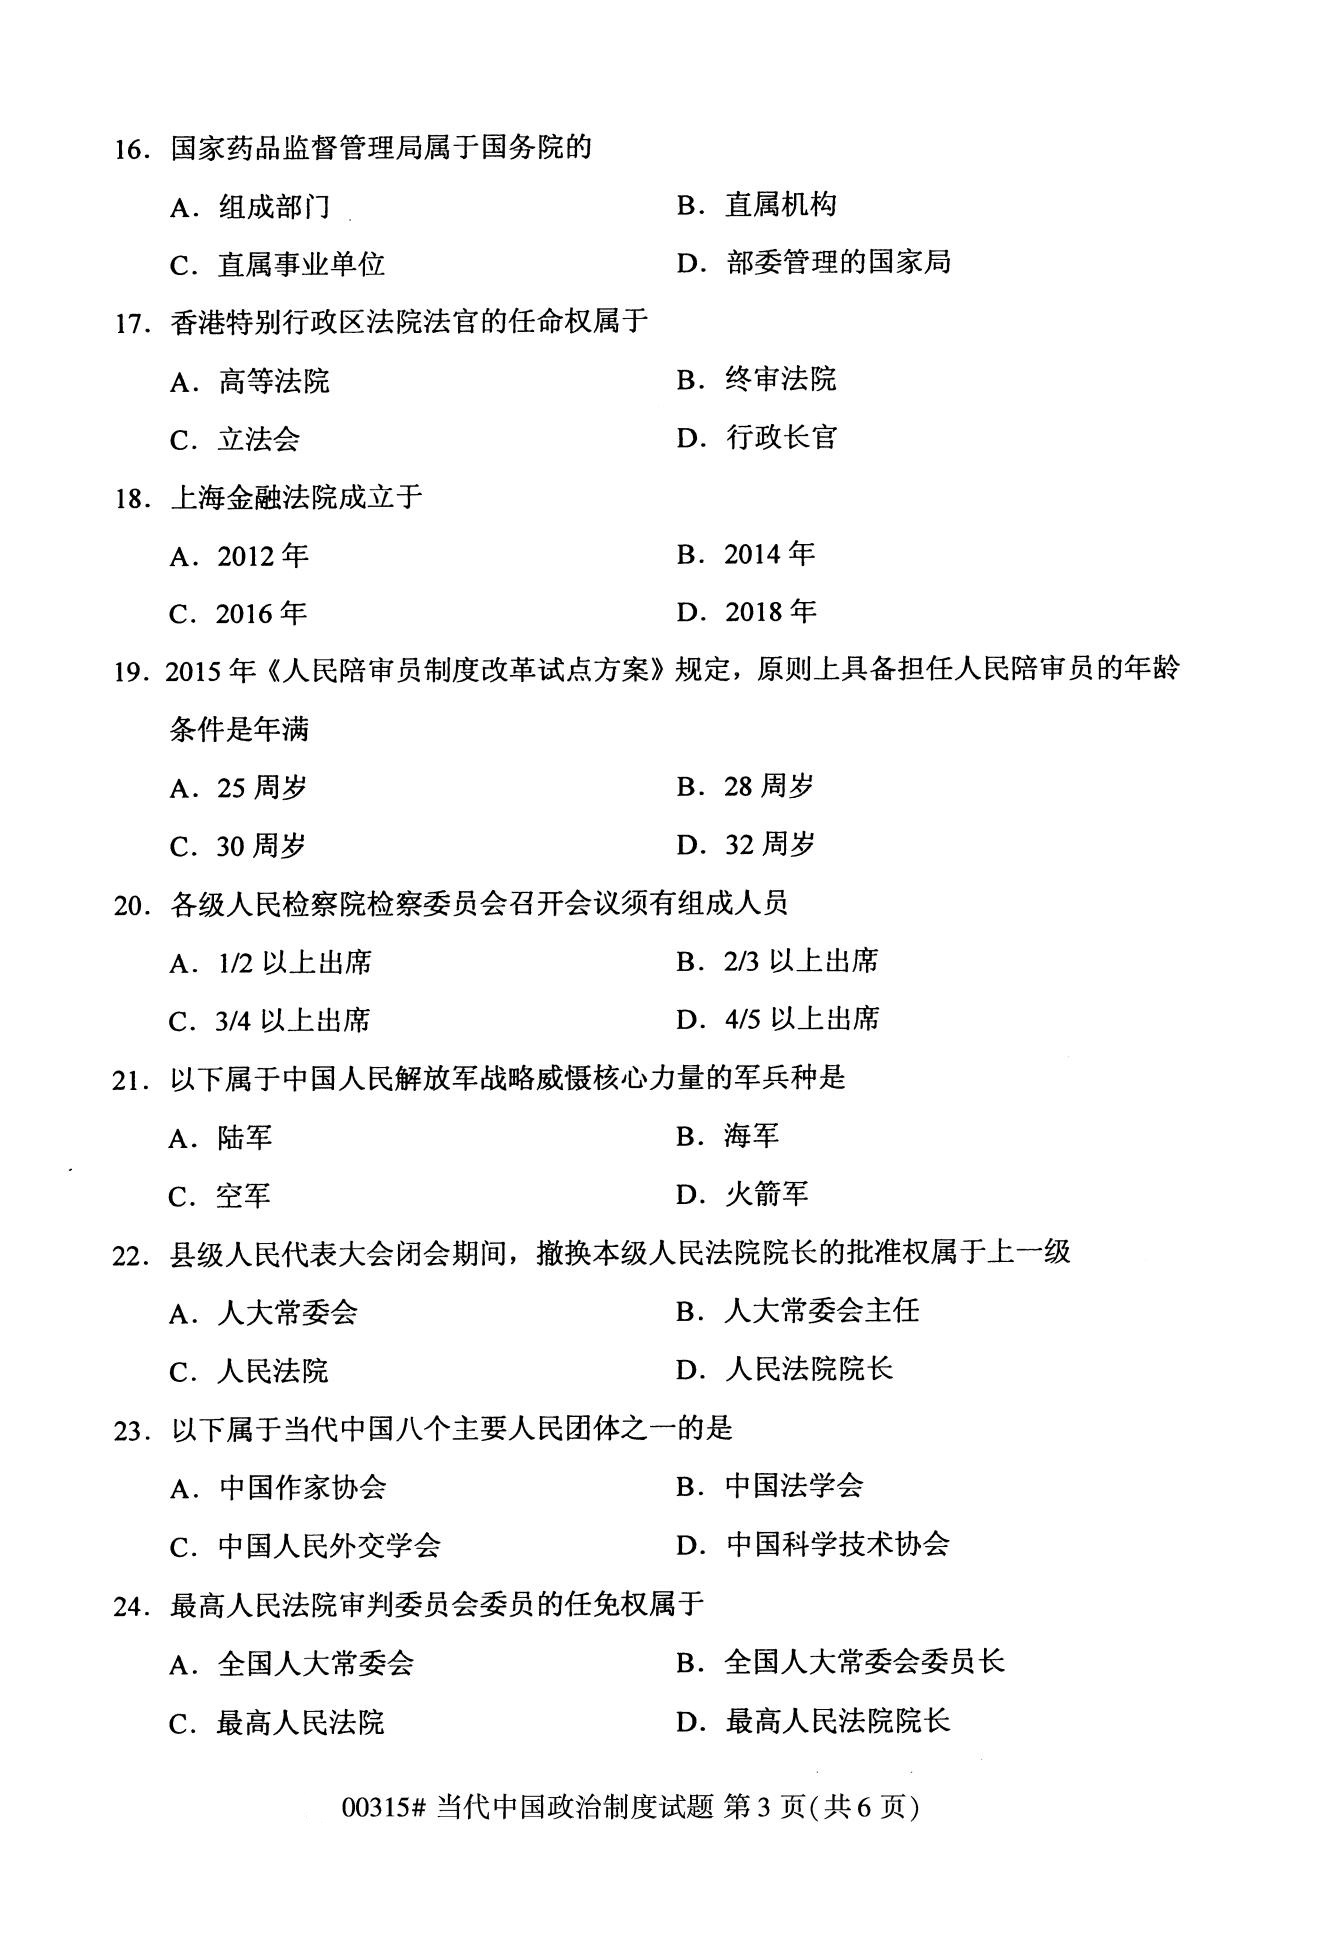 2020年10月（专科）高等教育自考当代中国政治制度00315真题